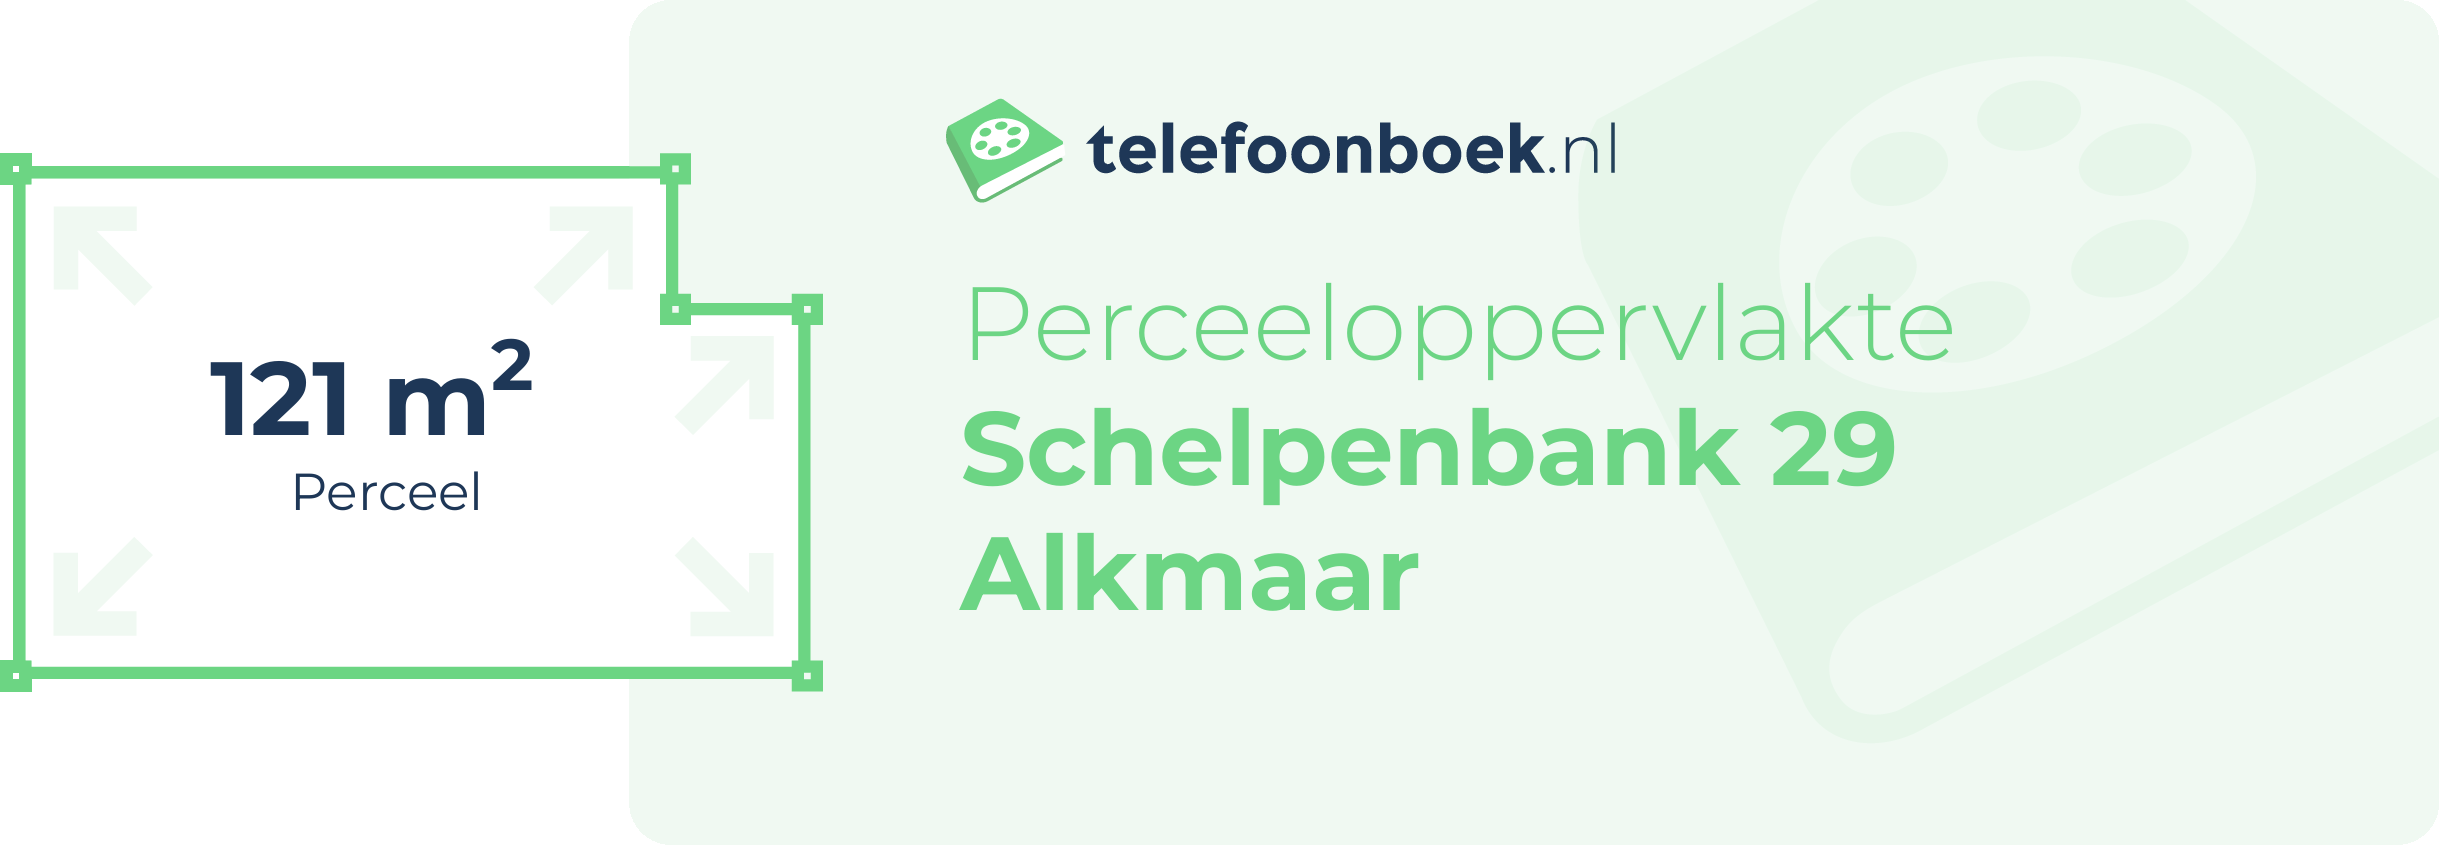 Perceeloppervlakte Schelpenbank 29 Alkmaar